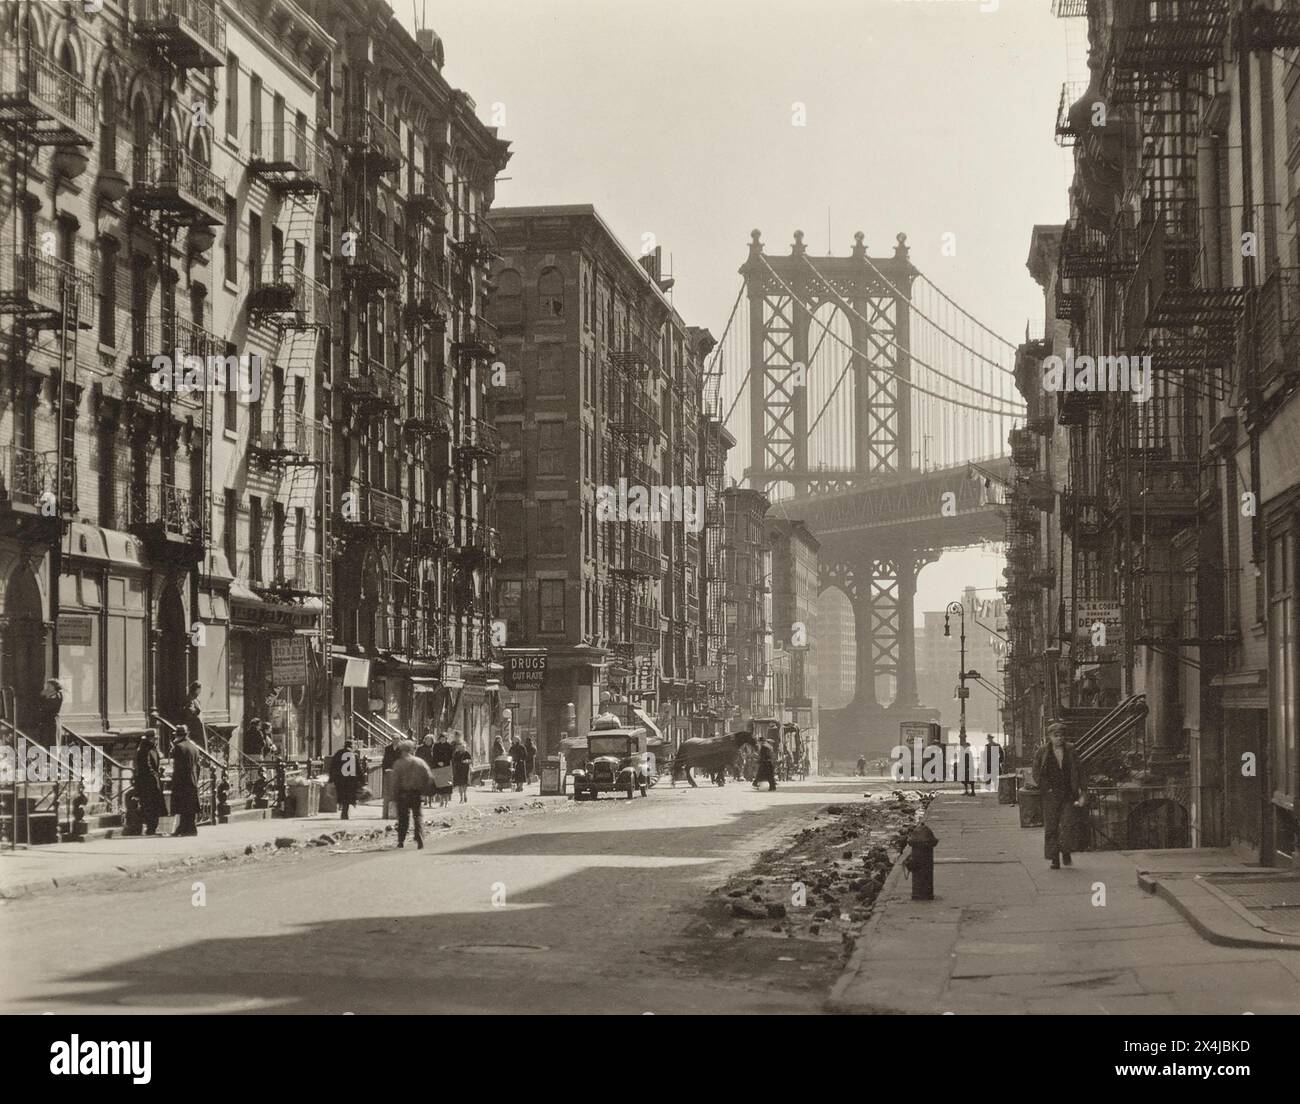 Pike Street à Henry Street en regardant vers Manhattan Bridge, New York City, New York, États-Unis, Berenice Abbott, Federal Art Project, 'Changing New York', mars 1936 Banque D'Images